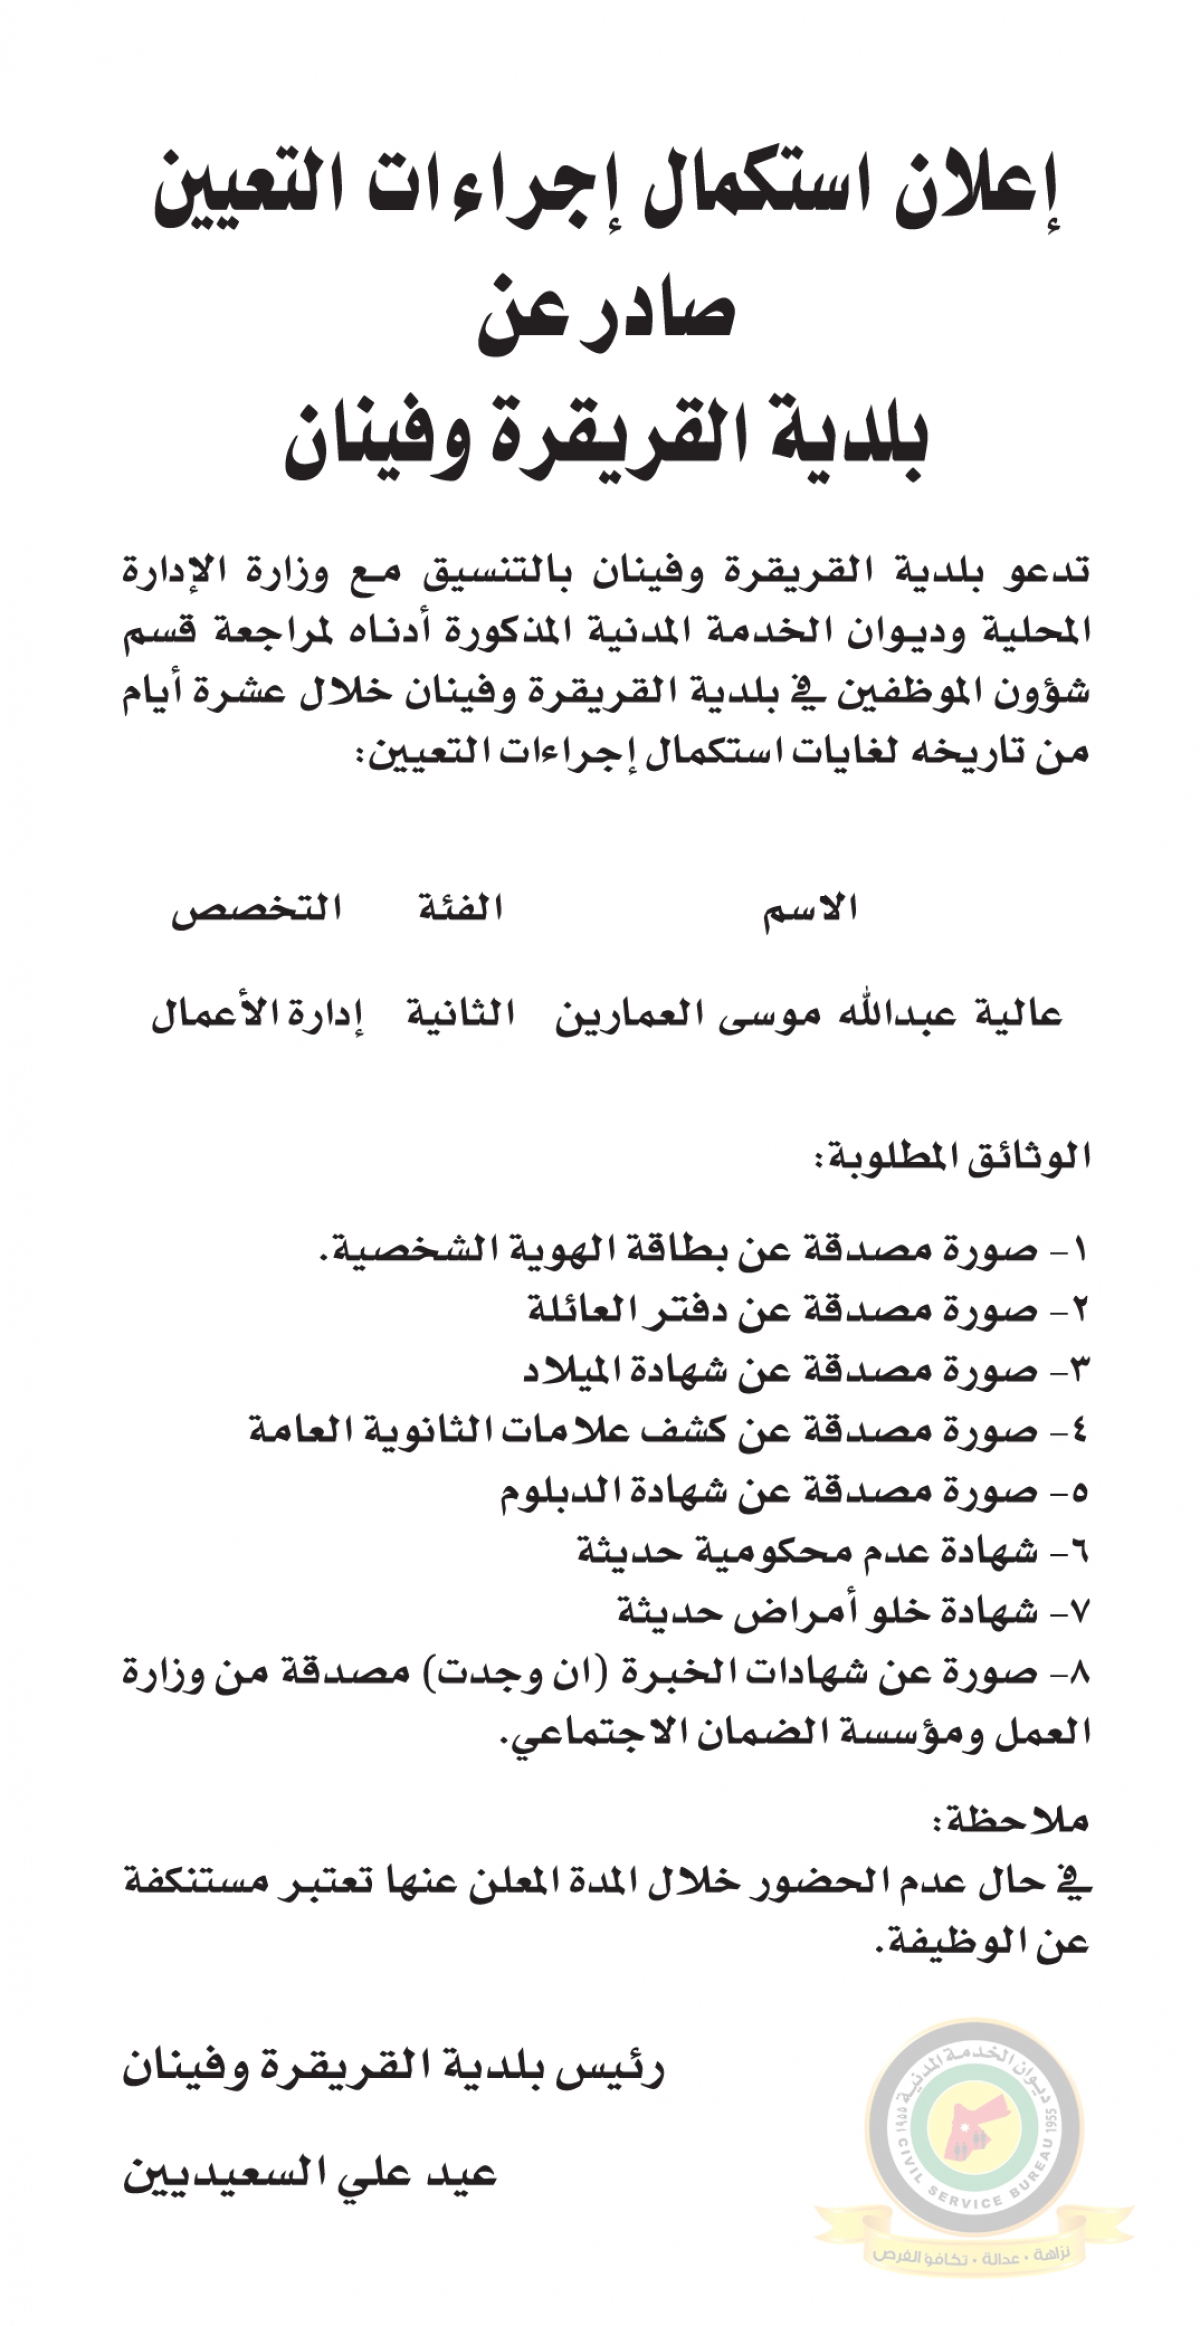 اعلان استكمال اجراءات التعيين صادرعن بلدية القريقرة وفينان